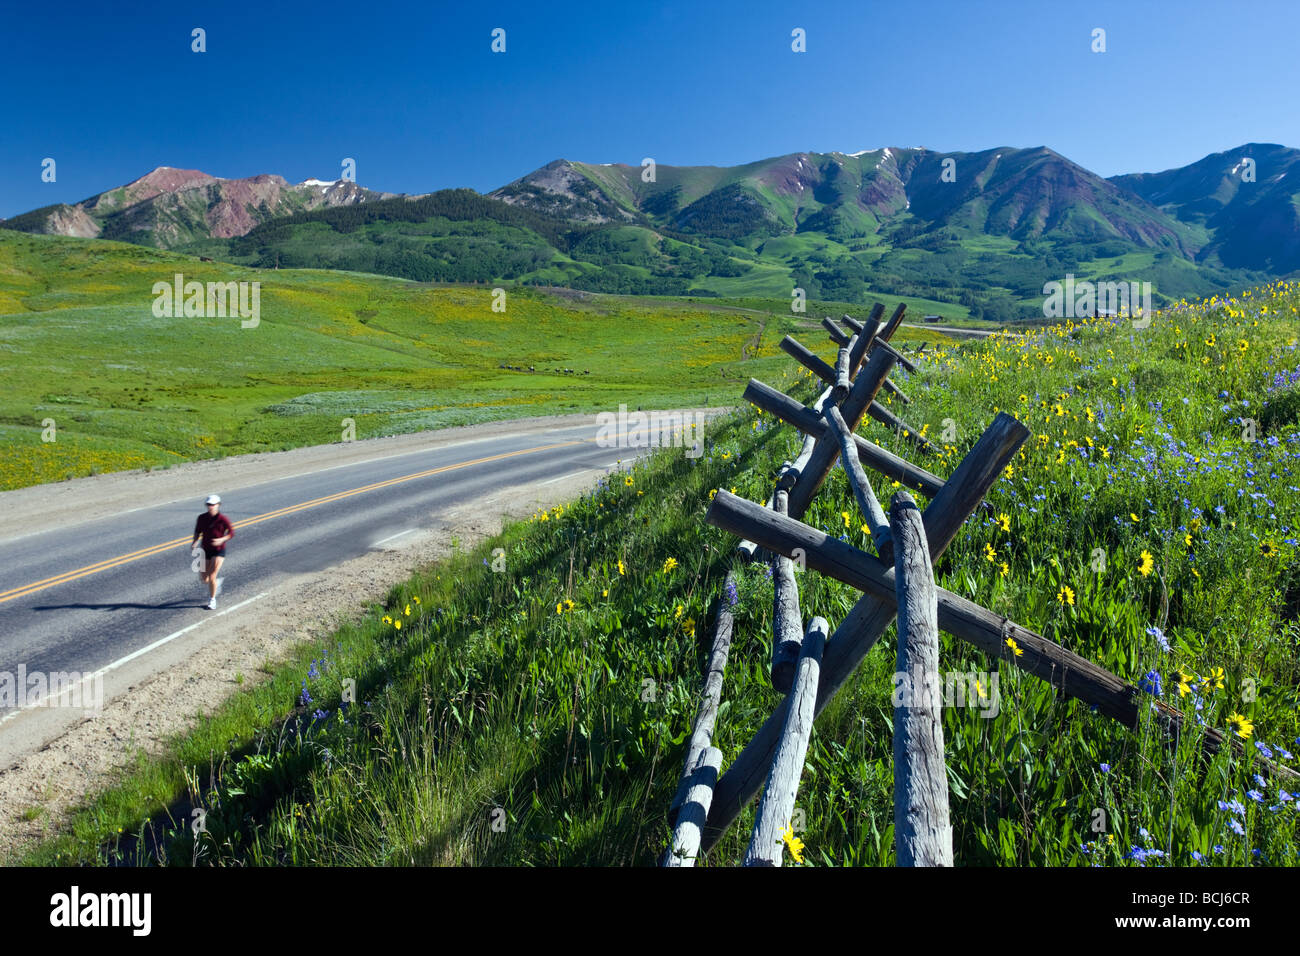 Zaun, Läufer und Wildblumen Maultiere Ohren und blauer Flachs säumen Gothic Road in der Nähe von Mount Crested Butte Colorado USA Stockfoto